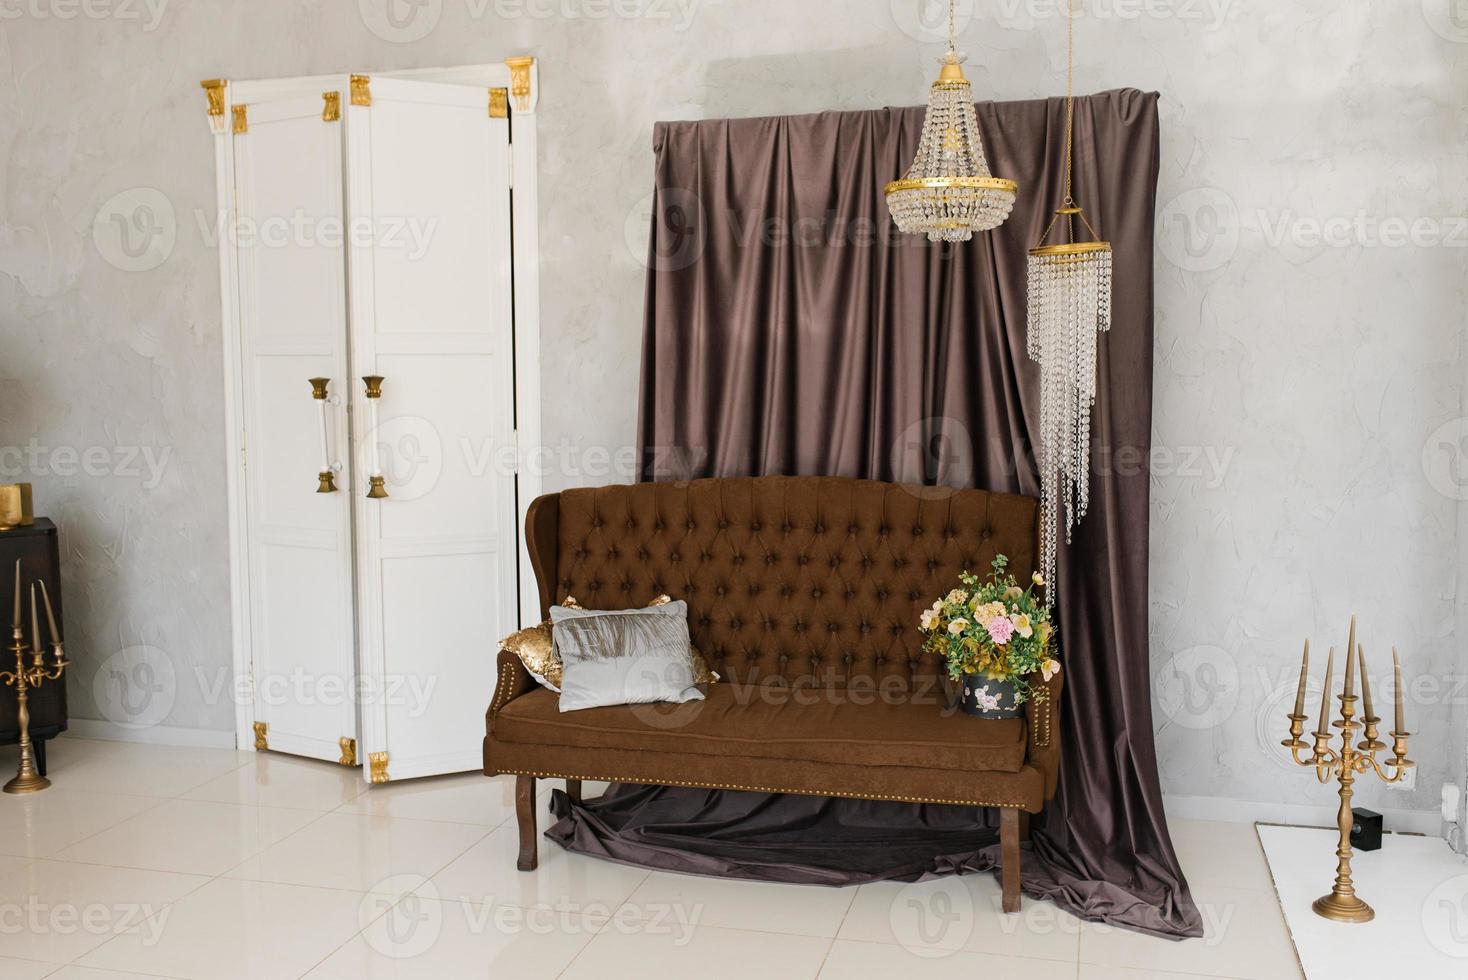 um luxuoso sofá clássico marrom com almofadas e um buquê de flores em um vaso, um lustre de cristal e portas brancas para um quarto na sala de estar da casa foto